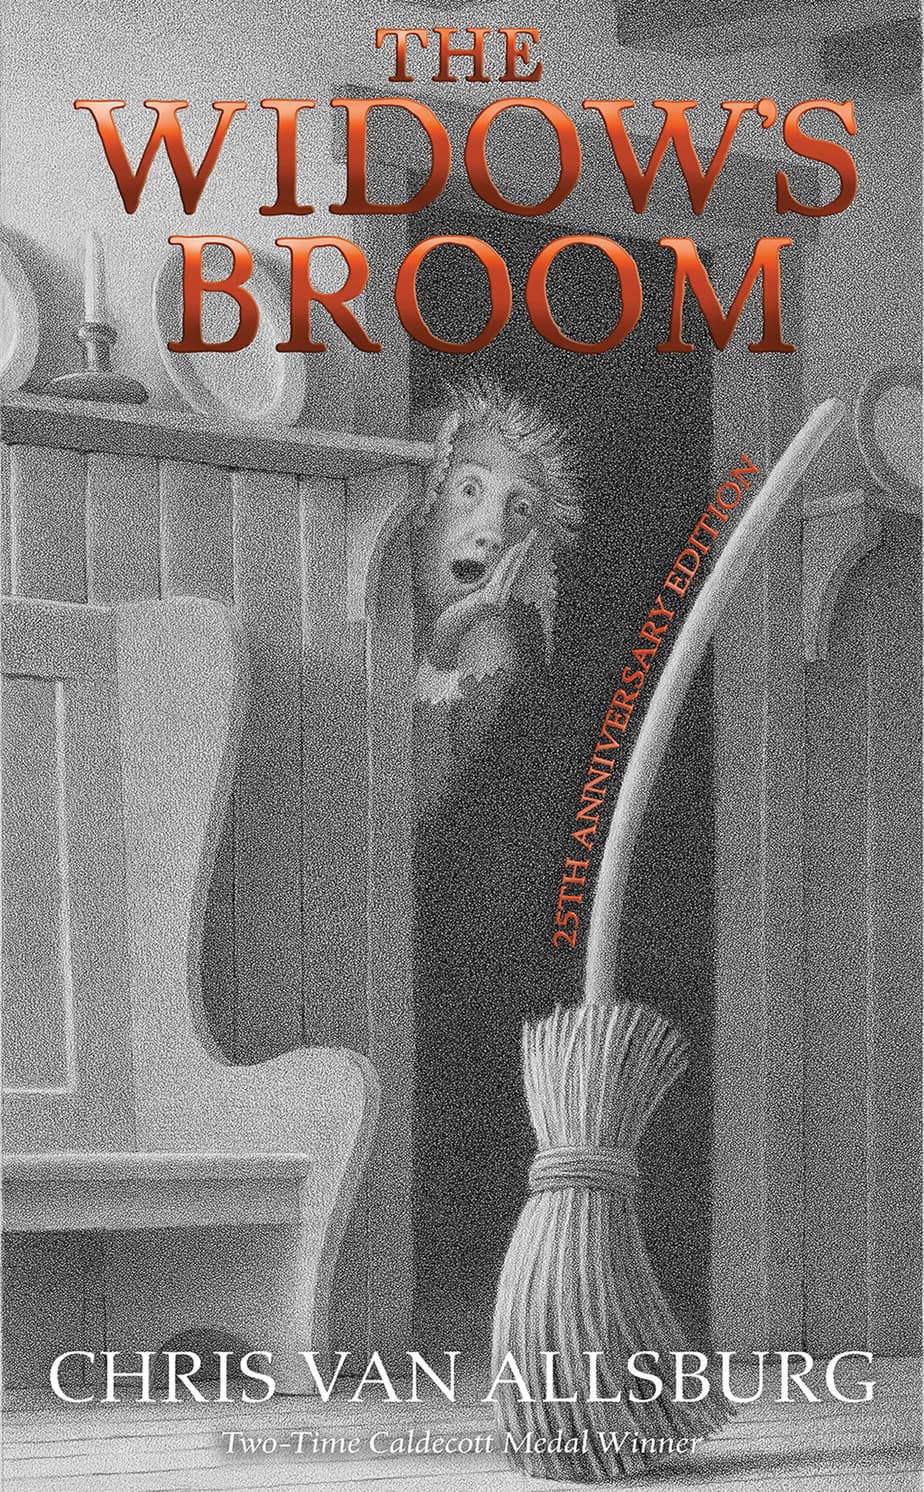 The Widow's Broom Chris Van Allsburg cover